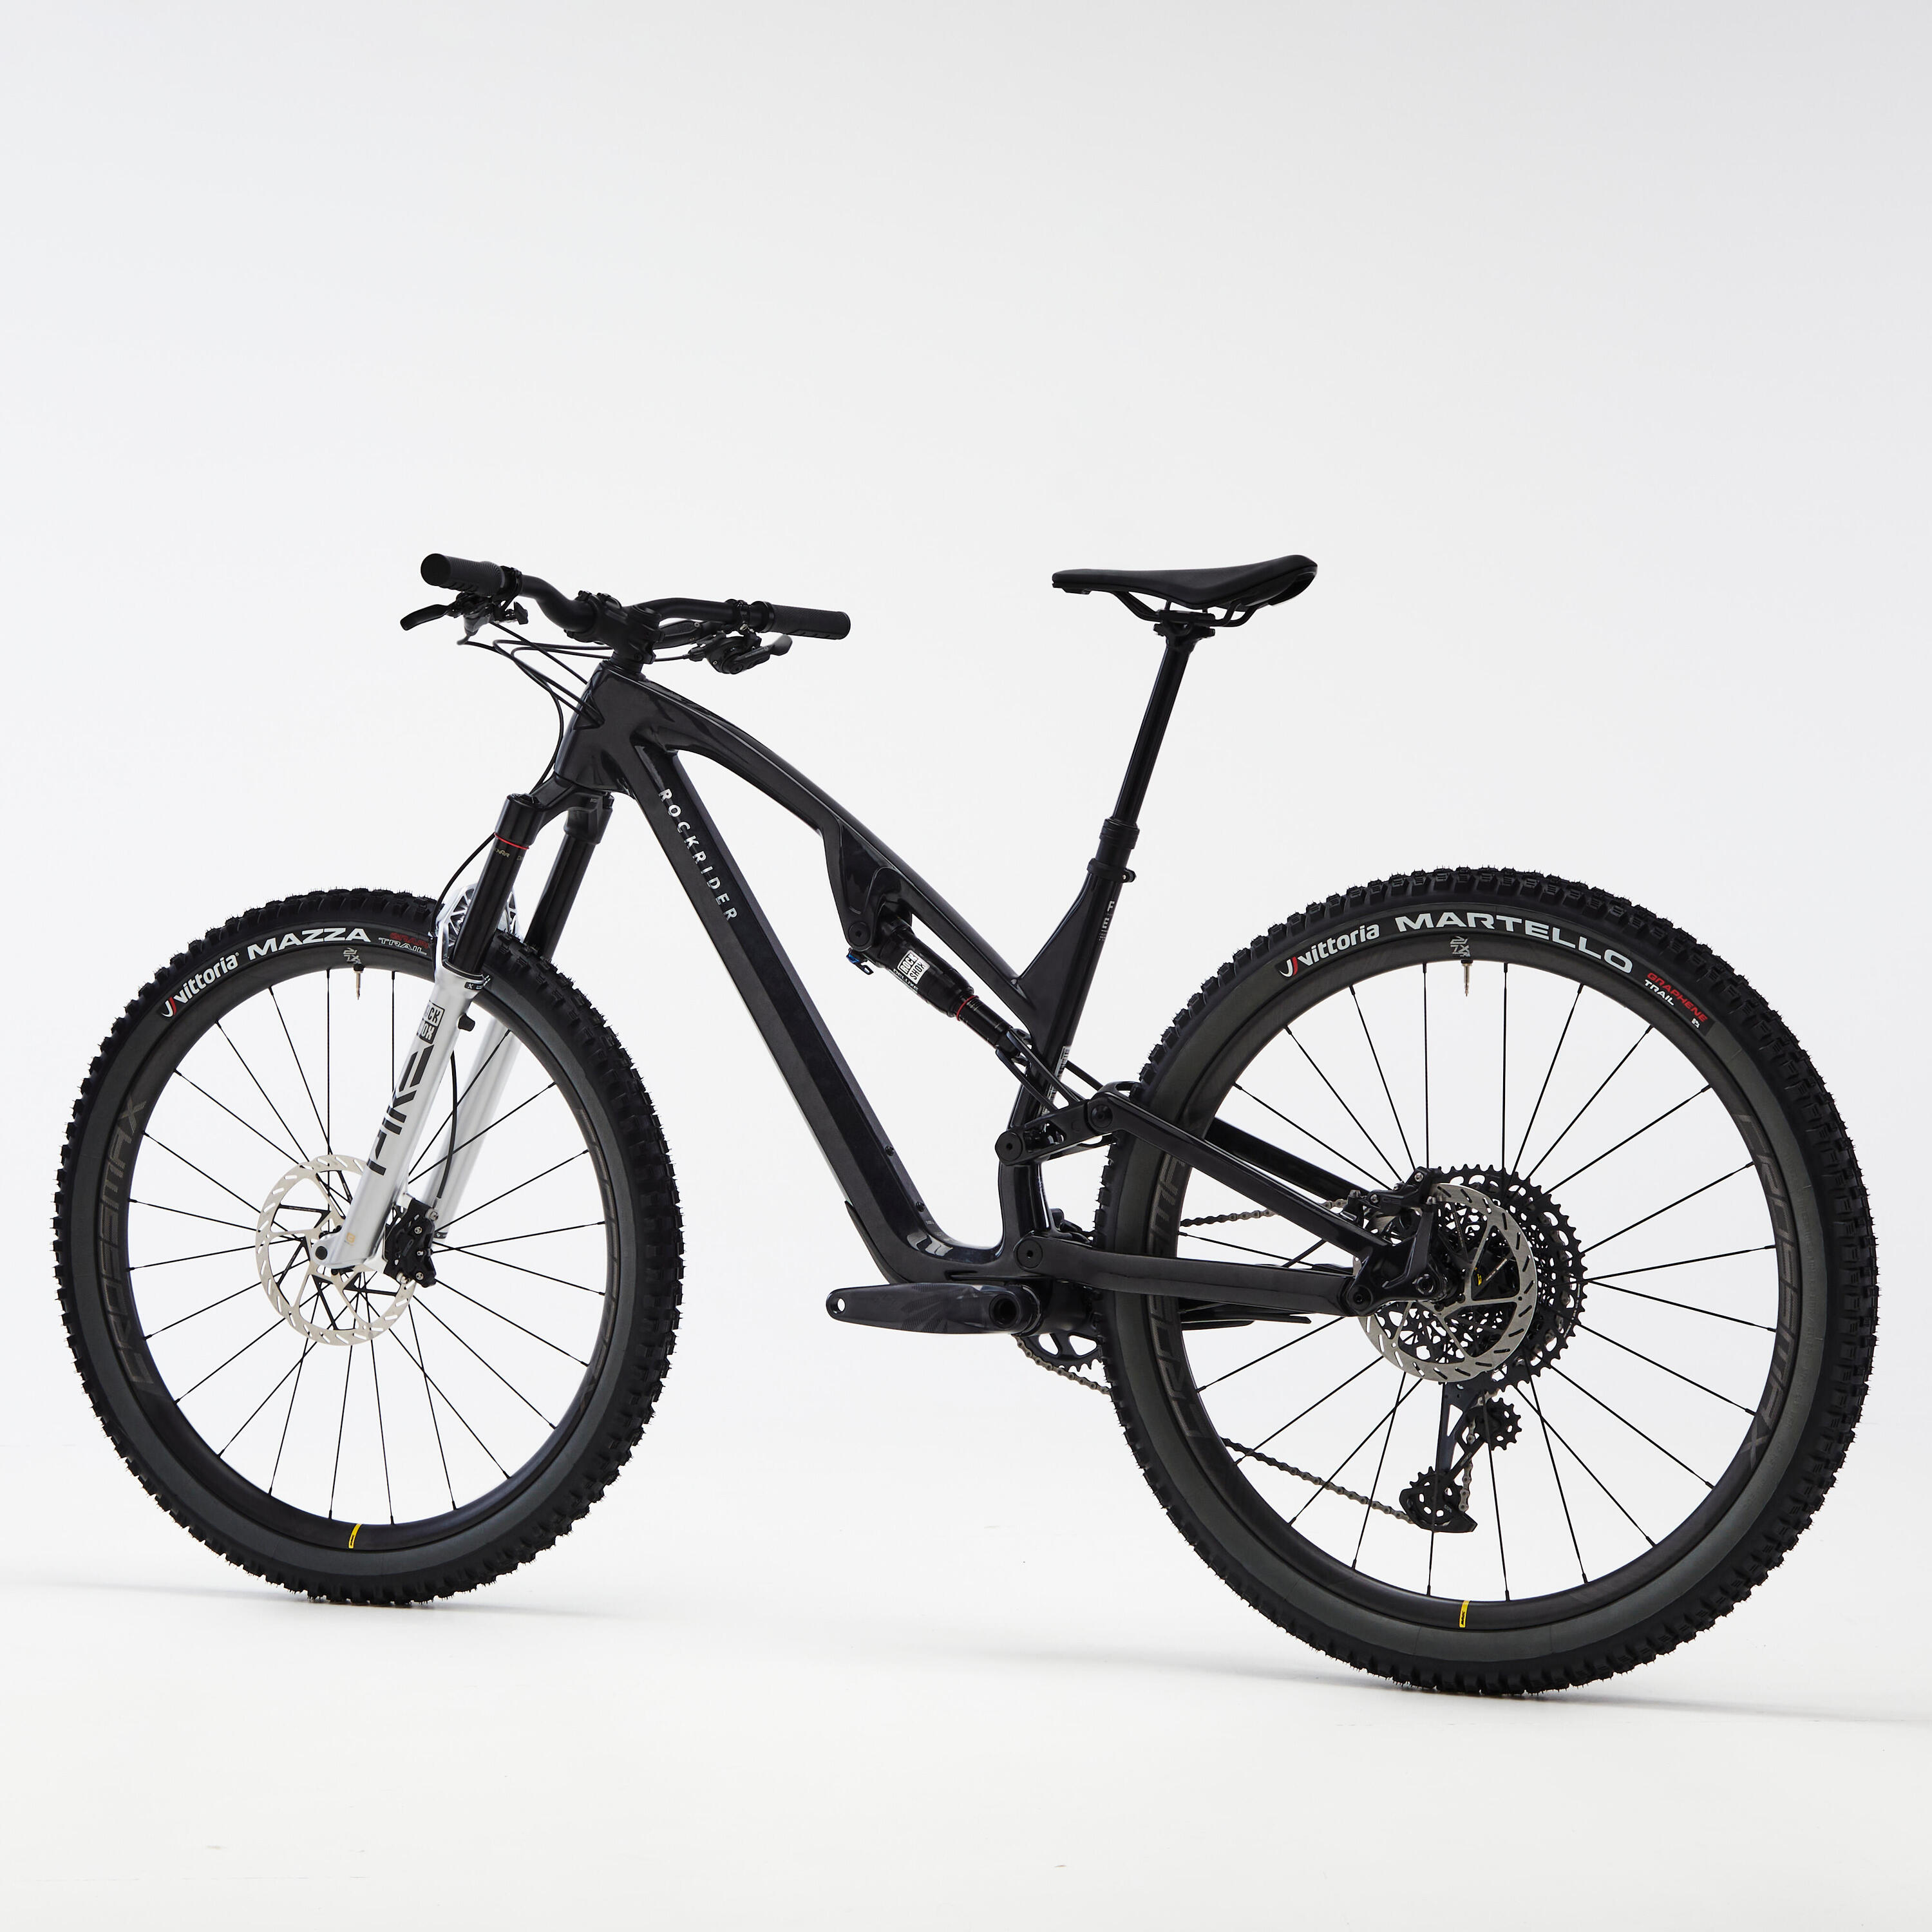 Carbon frame, adjustable suspension mountain bike, black 5/11